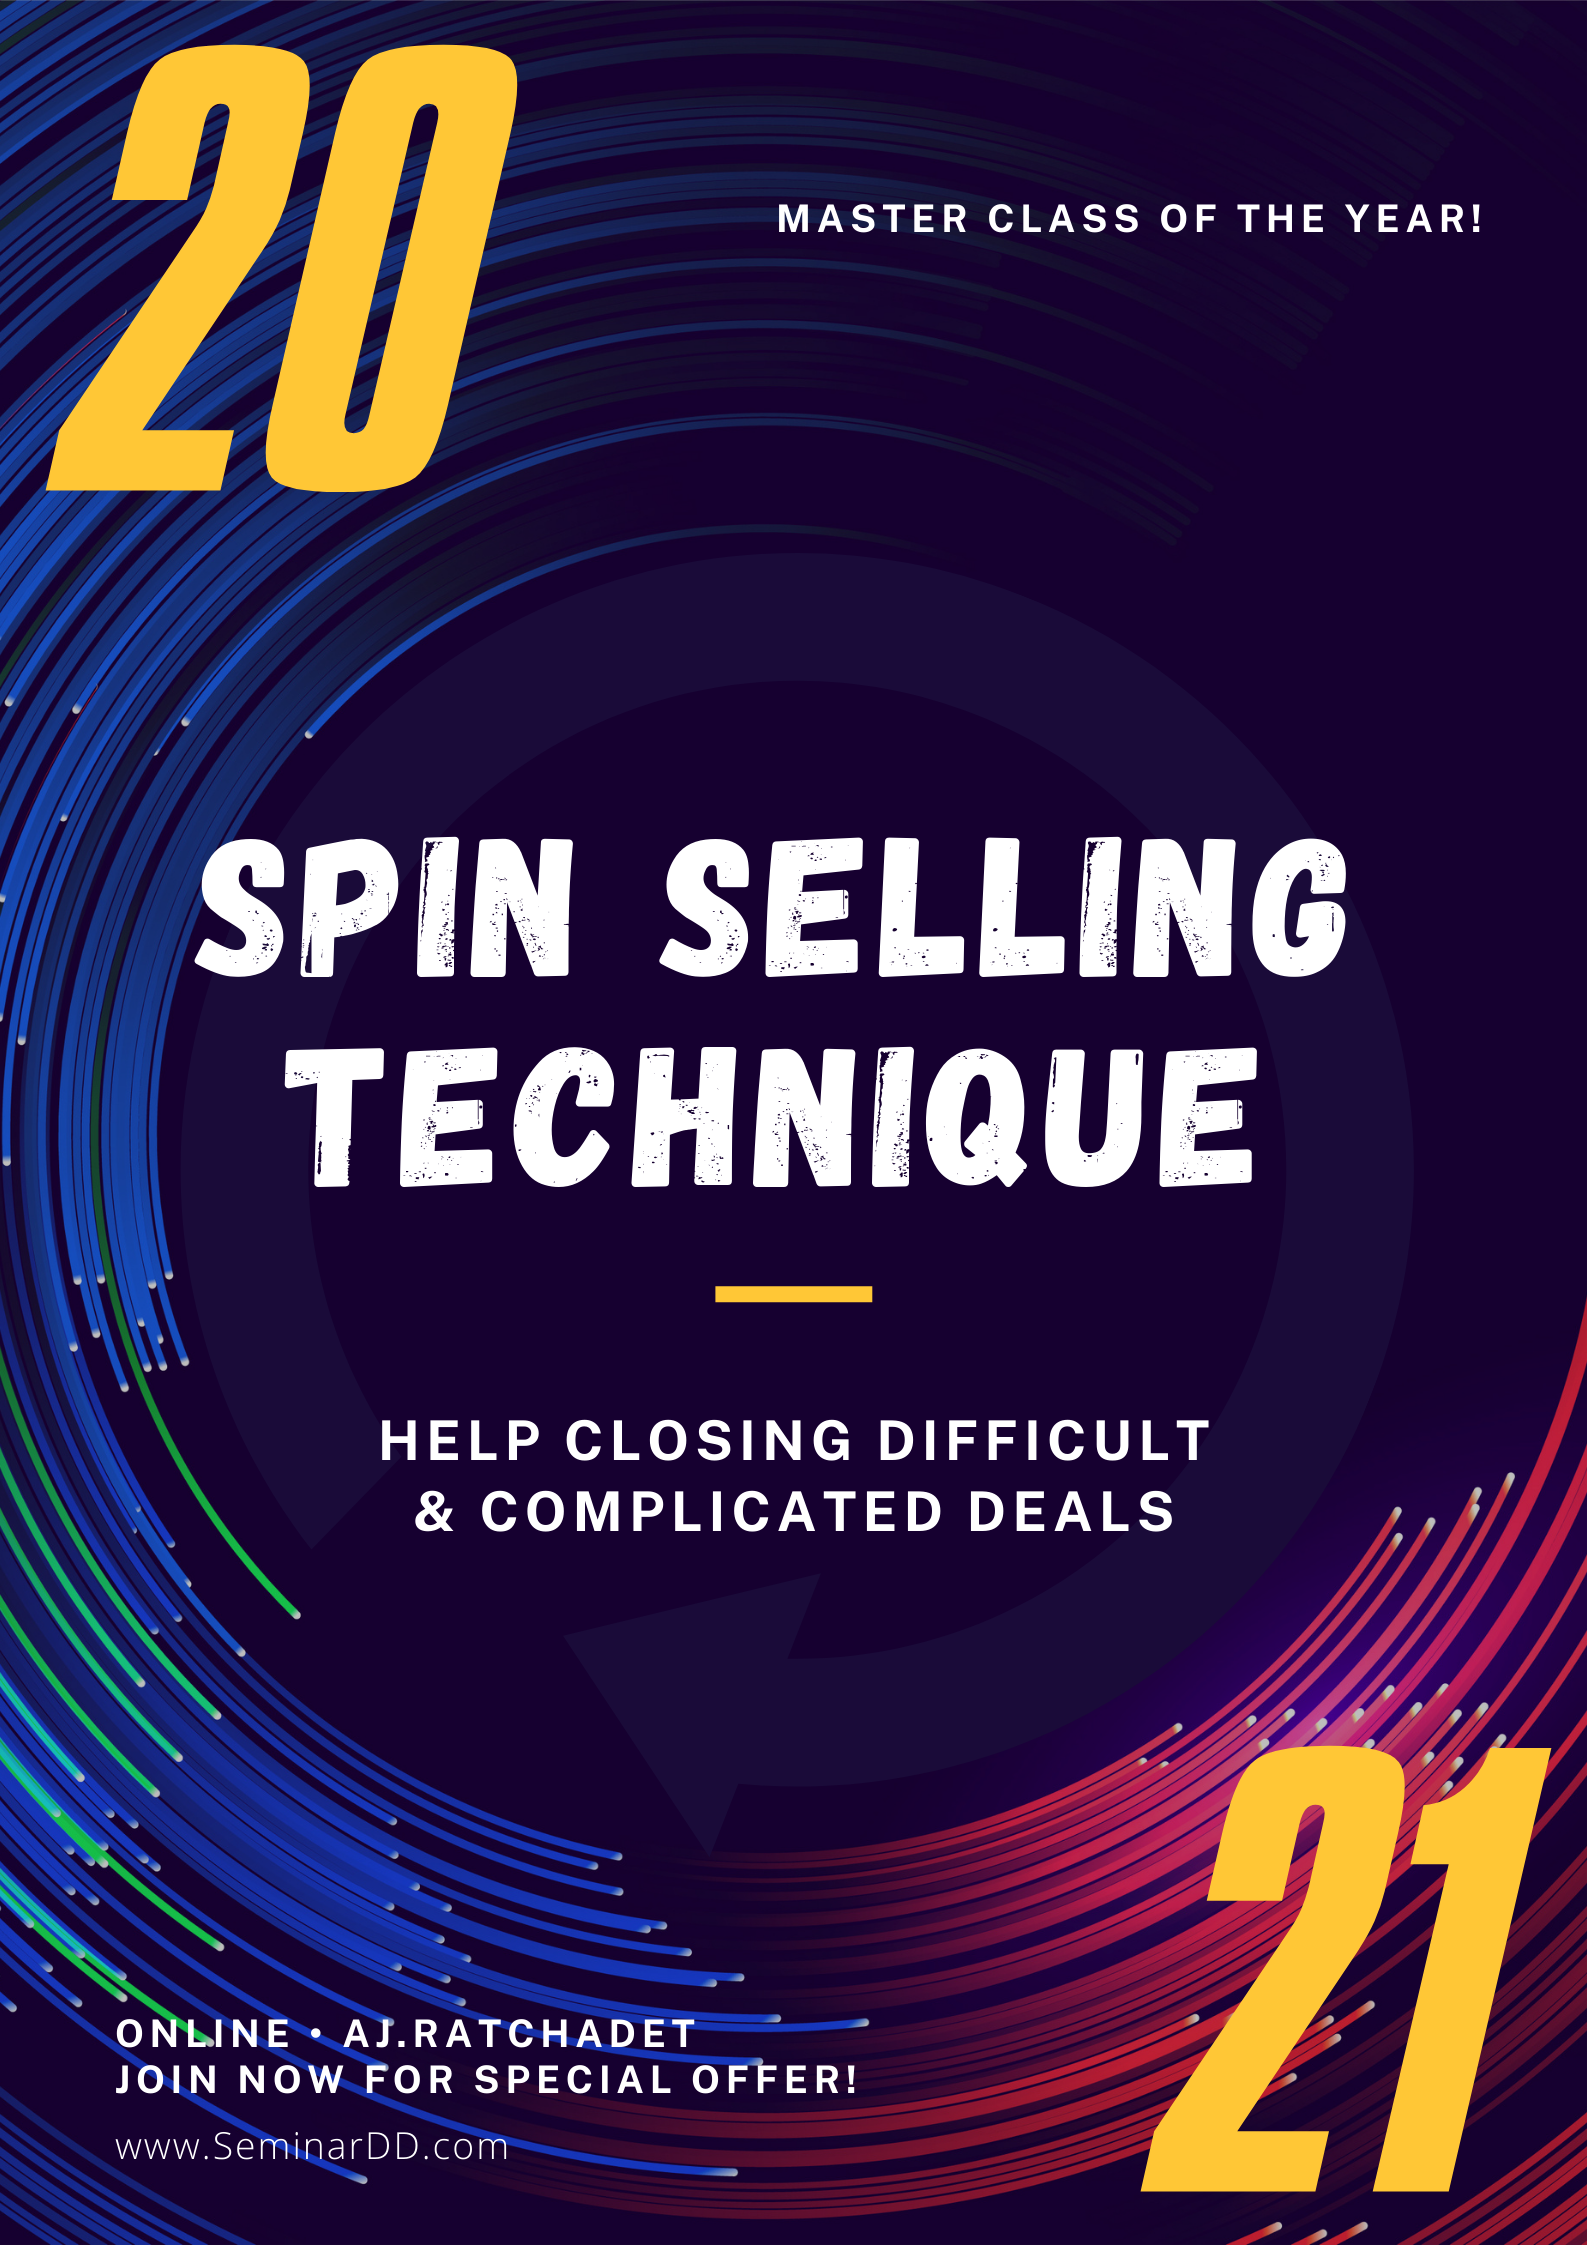 เทคนิค SPIN Selling เพื่อปิดการขาย (SPIN Selling Technique to Close the Sales)